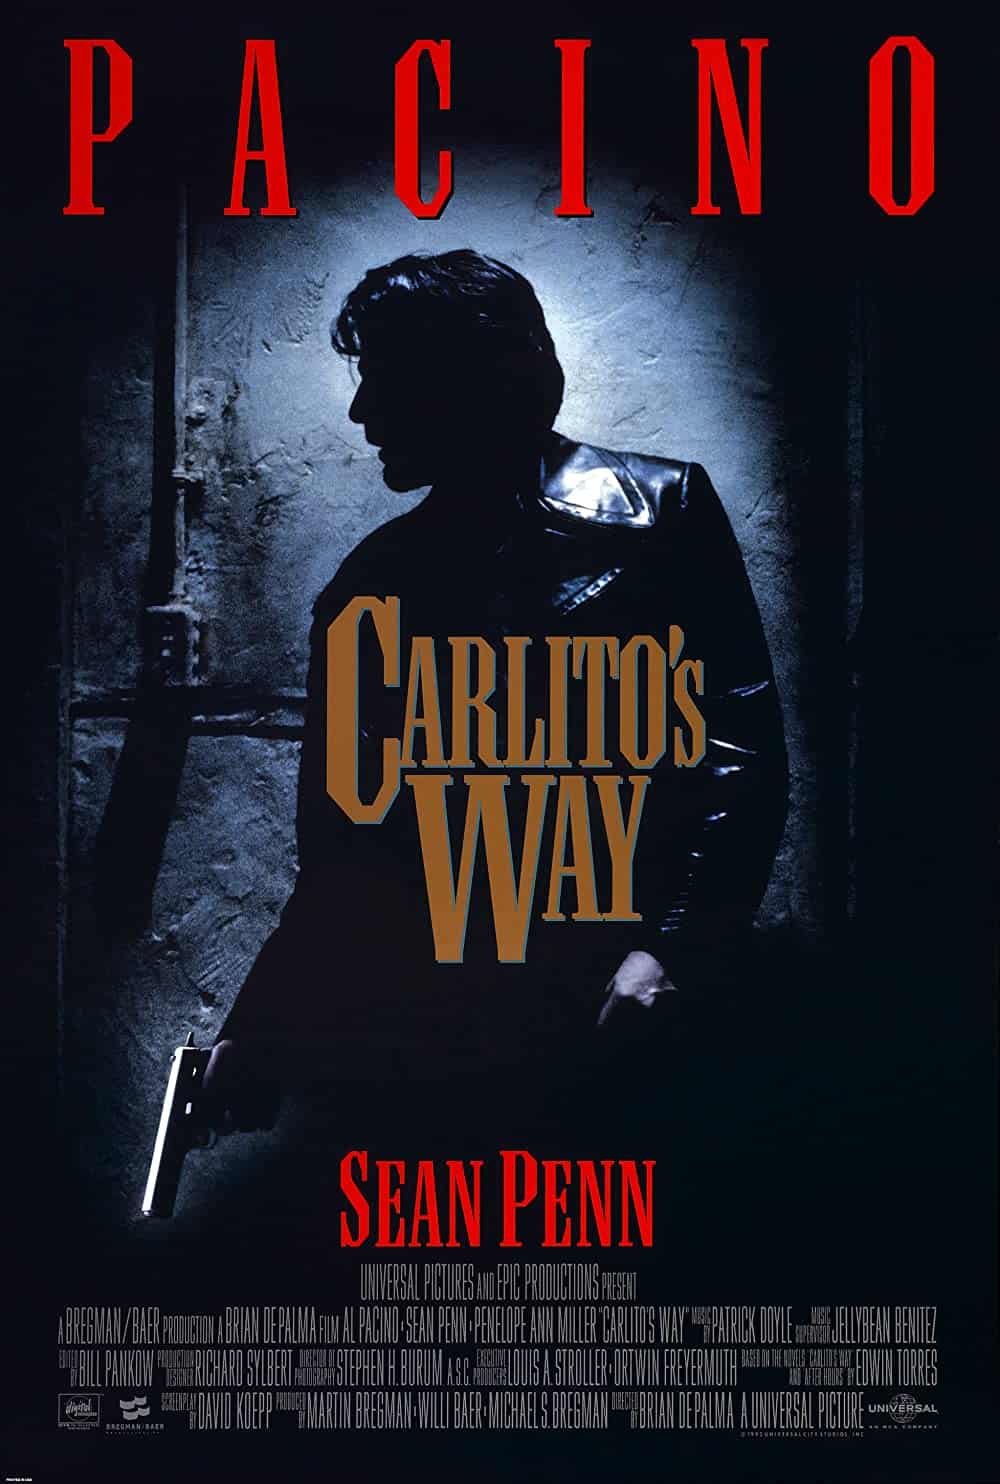 Carlito’s Way (1993)